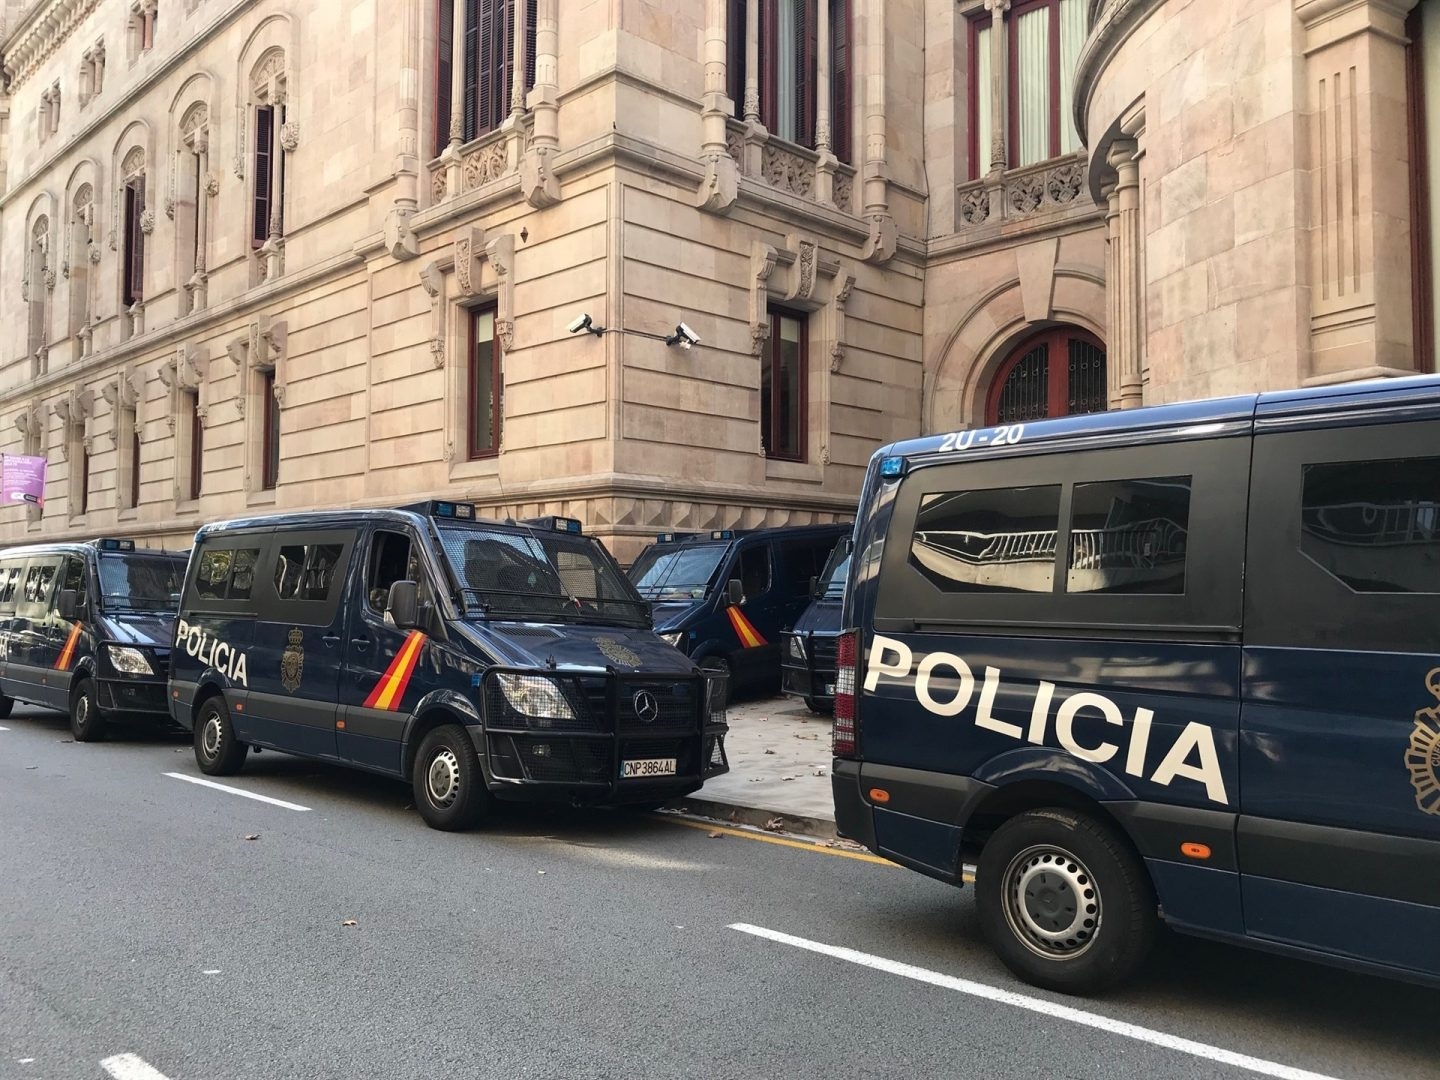 Interior retirará el despliegue de Policía y Guardia Civil en Cataluña antes del sábado